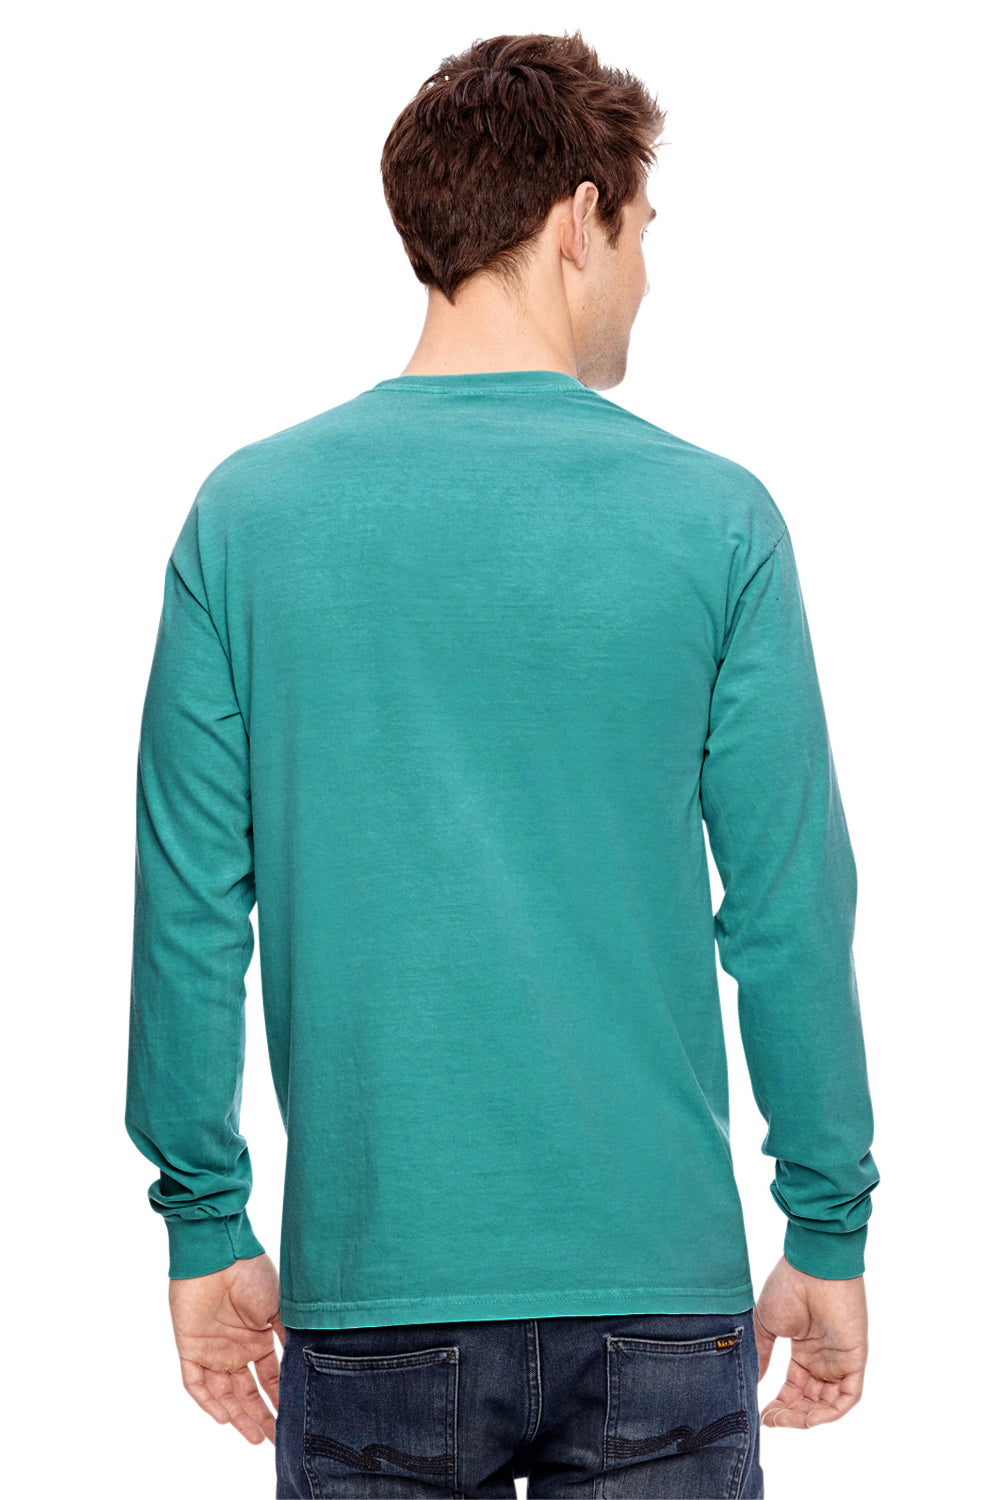 Comfort Colors C4410 Mens Long Sleeve Crewneck T-Shirt w/ Pocket Seafoam Green Back